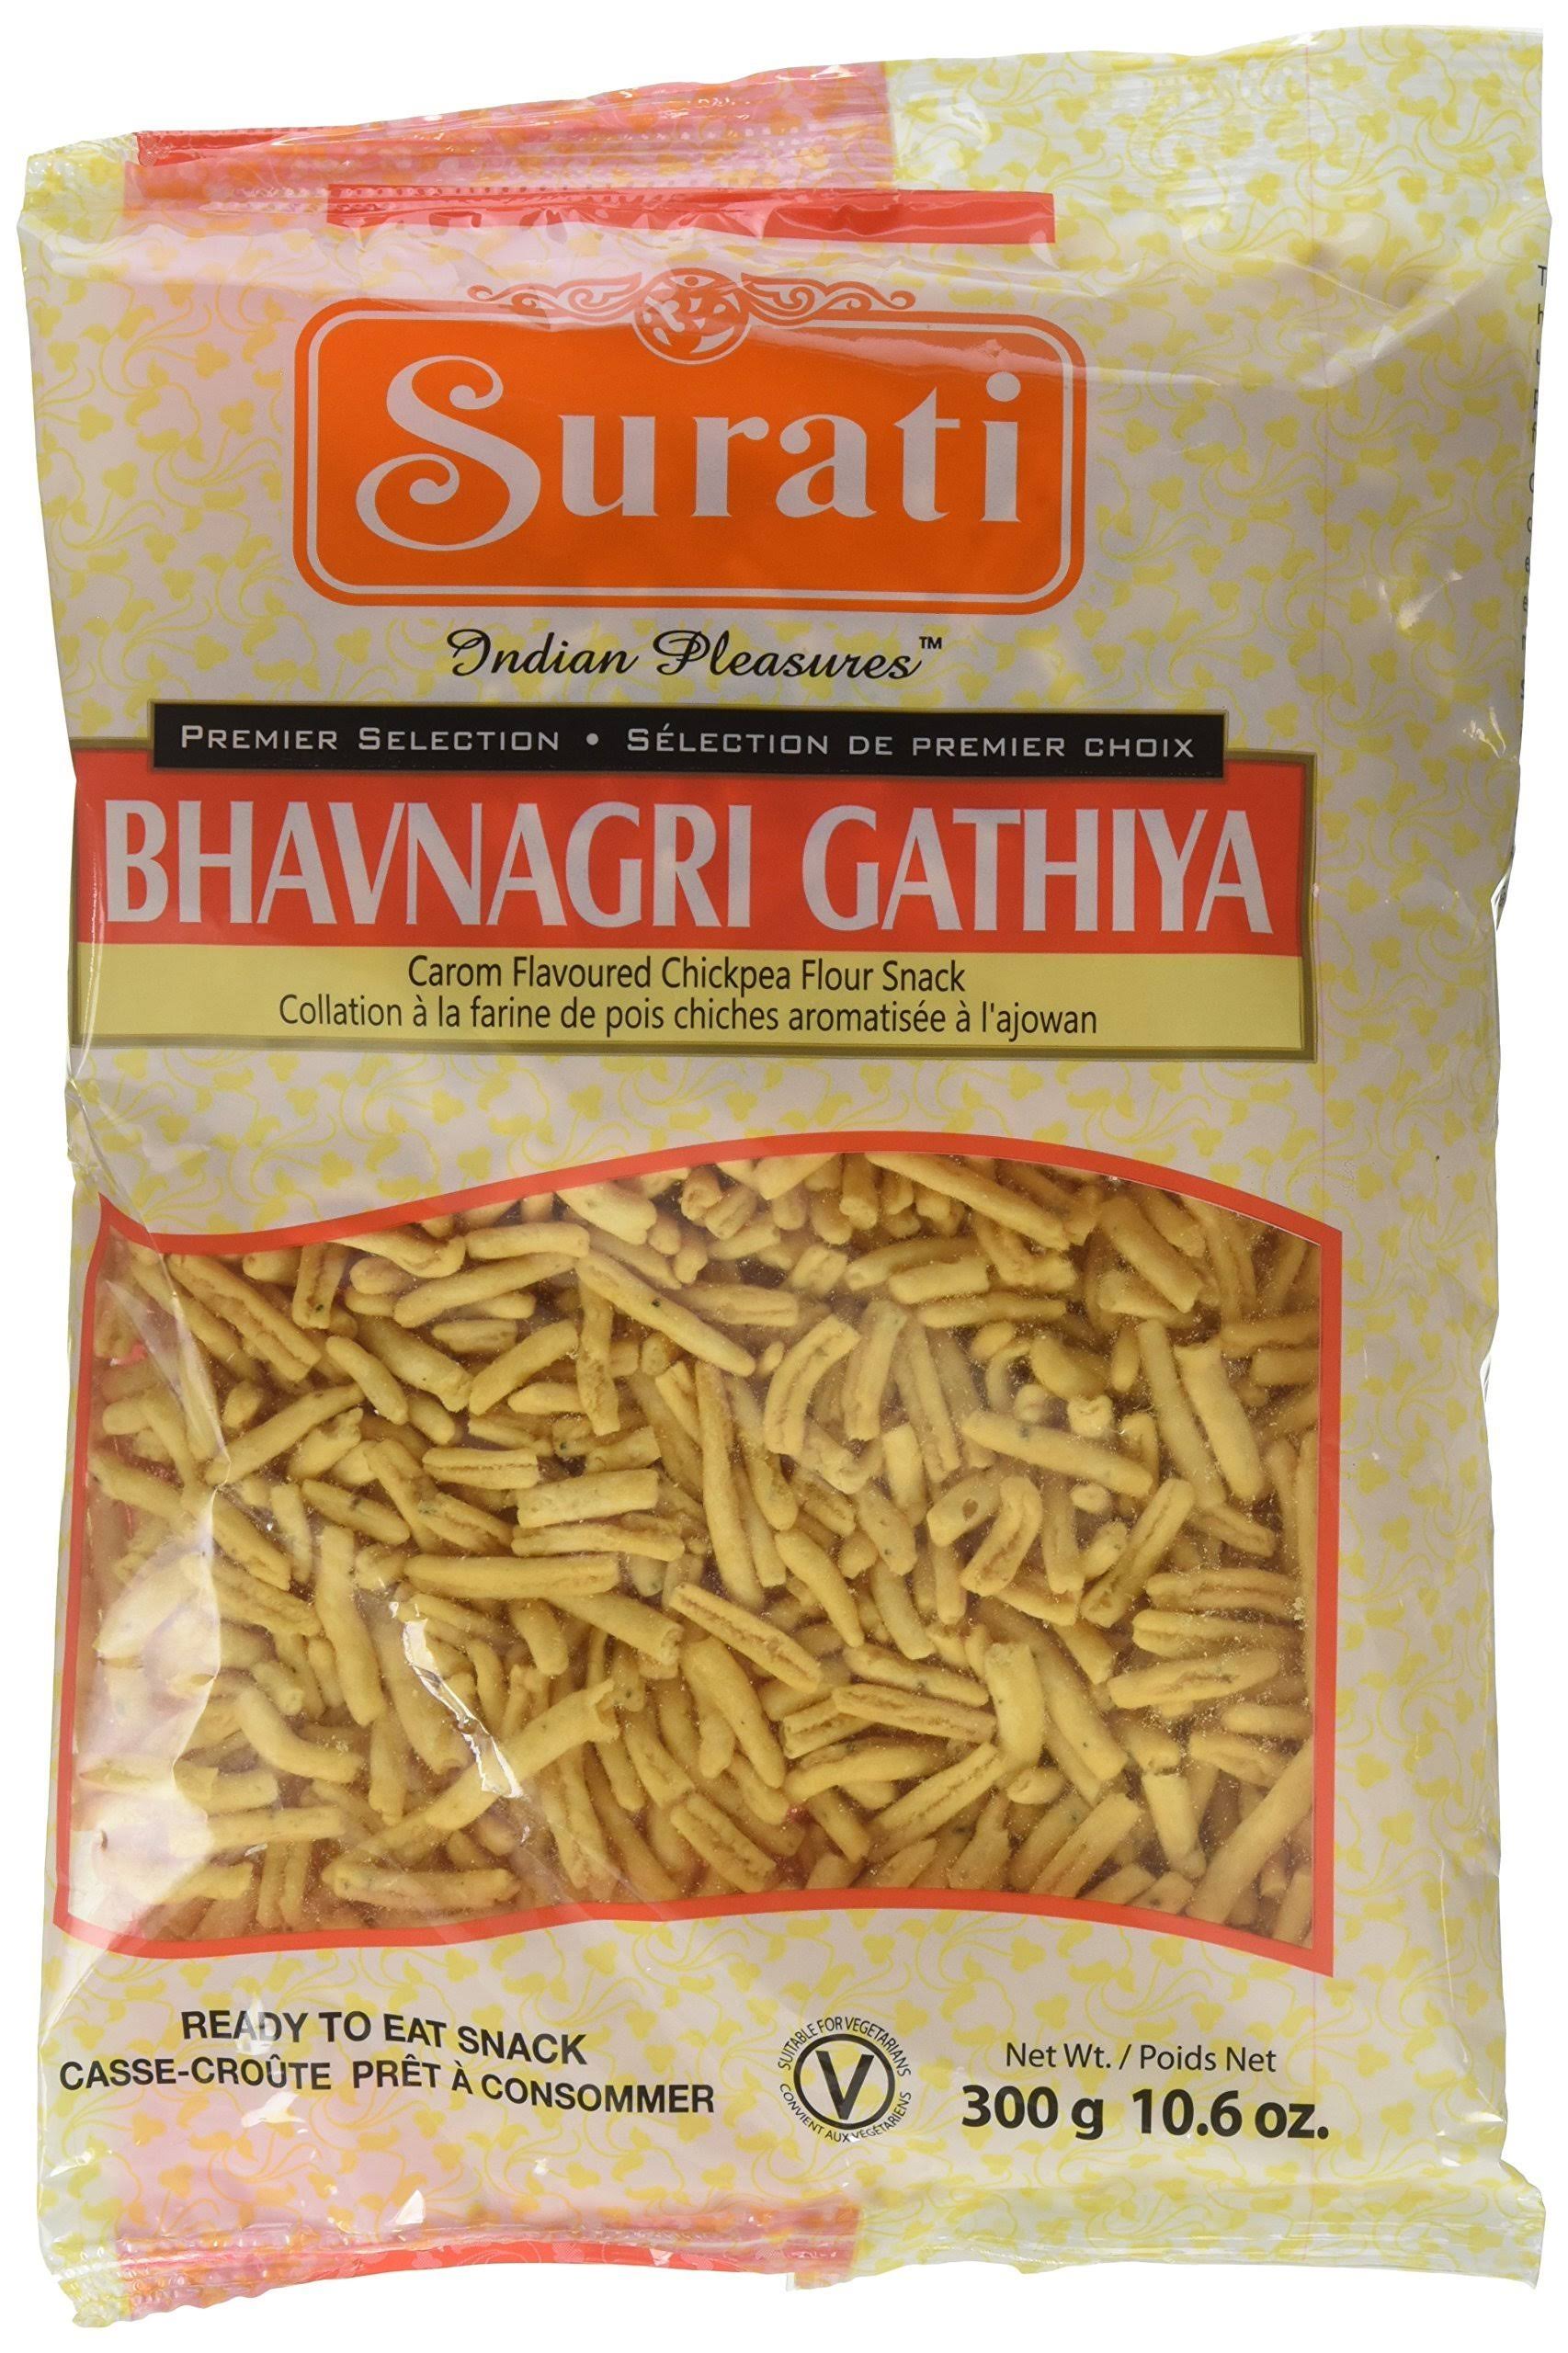 Surati Bhavnagri Gathiya - 12oz